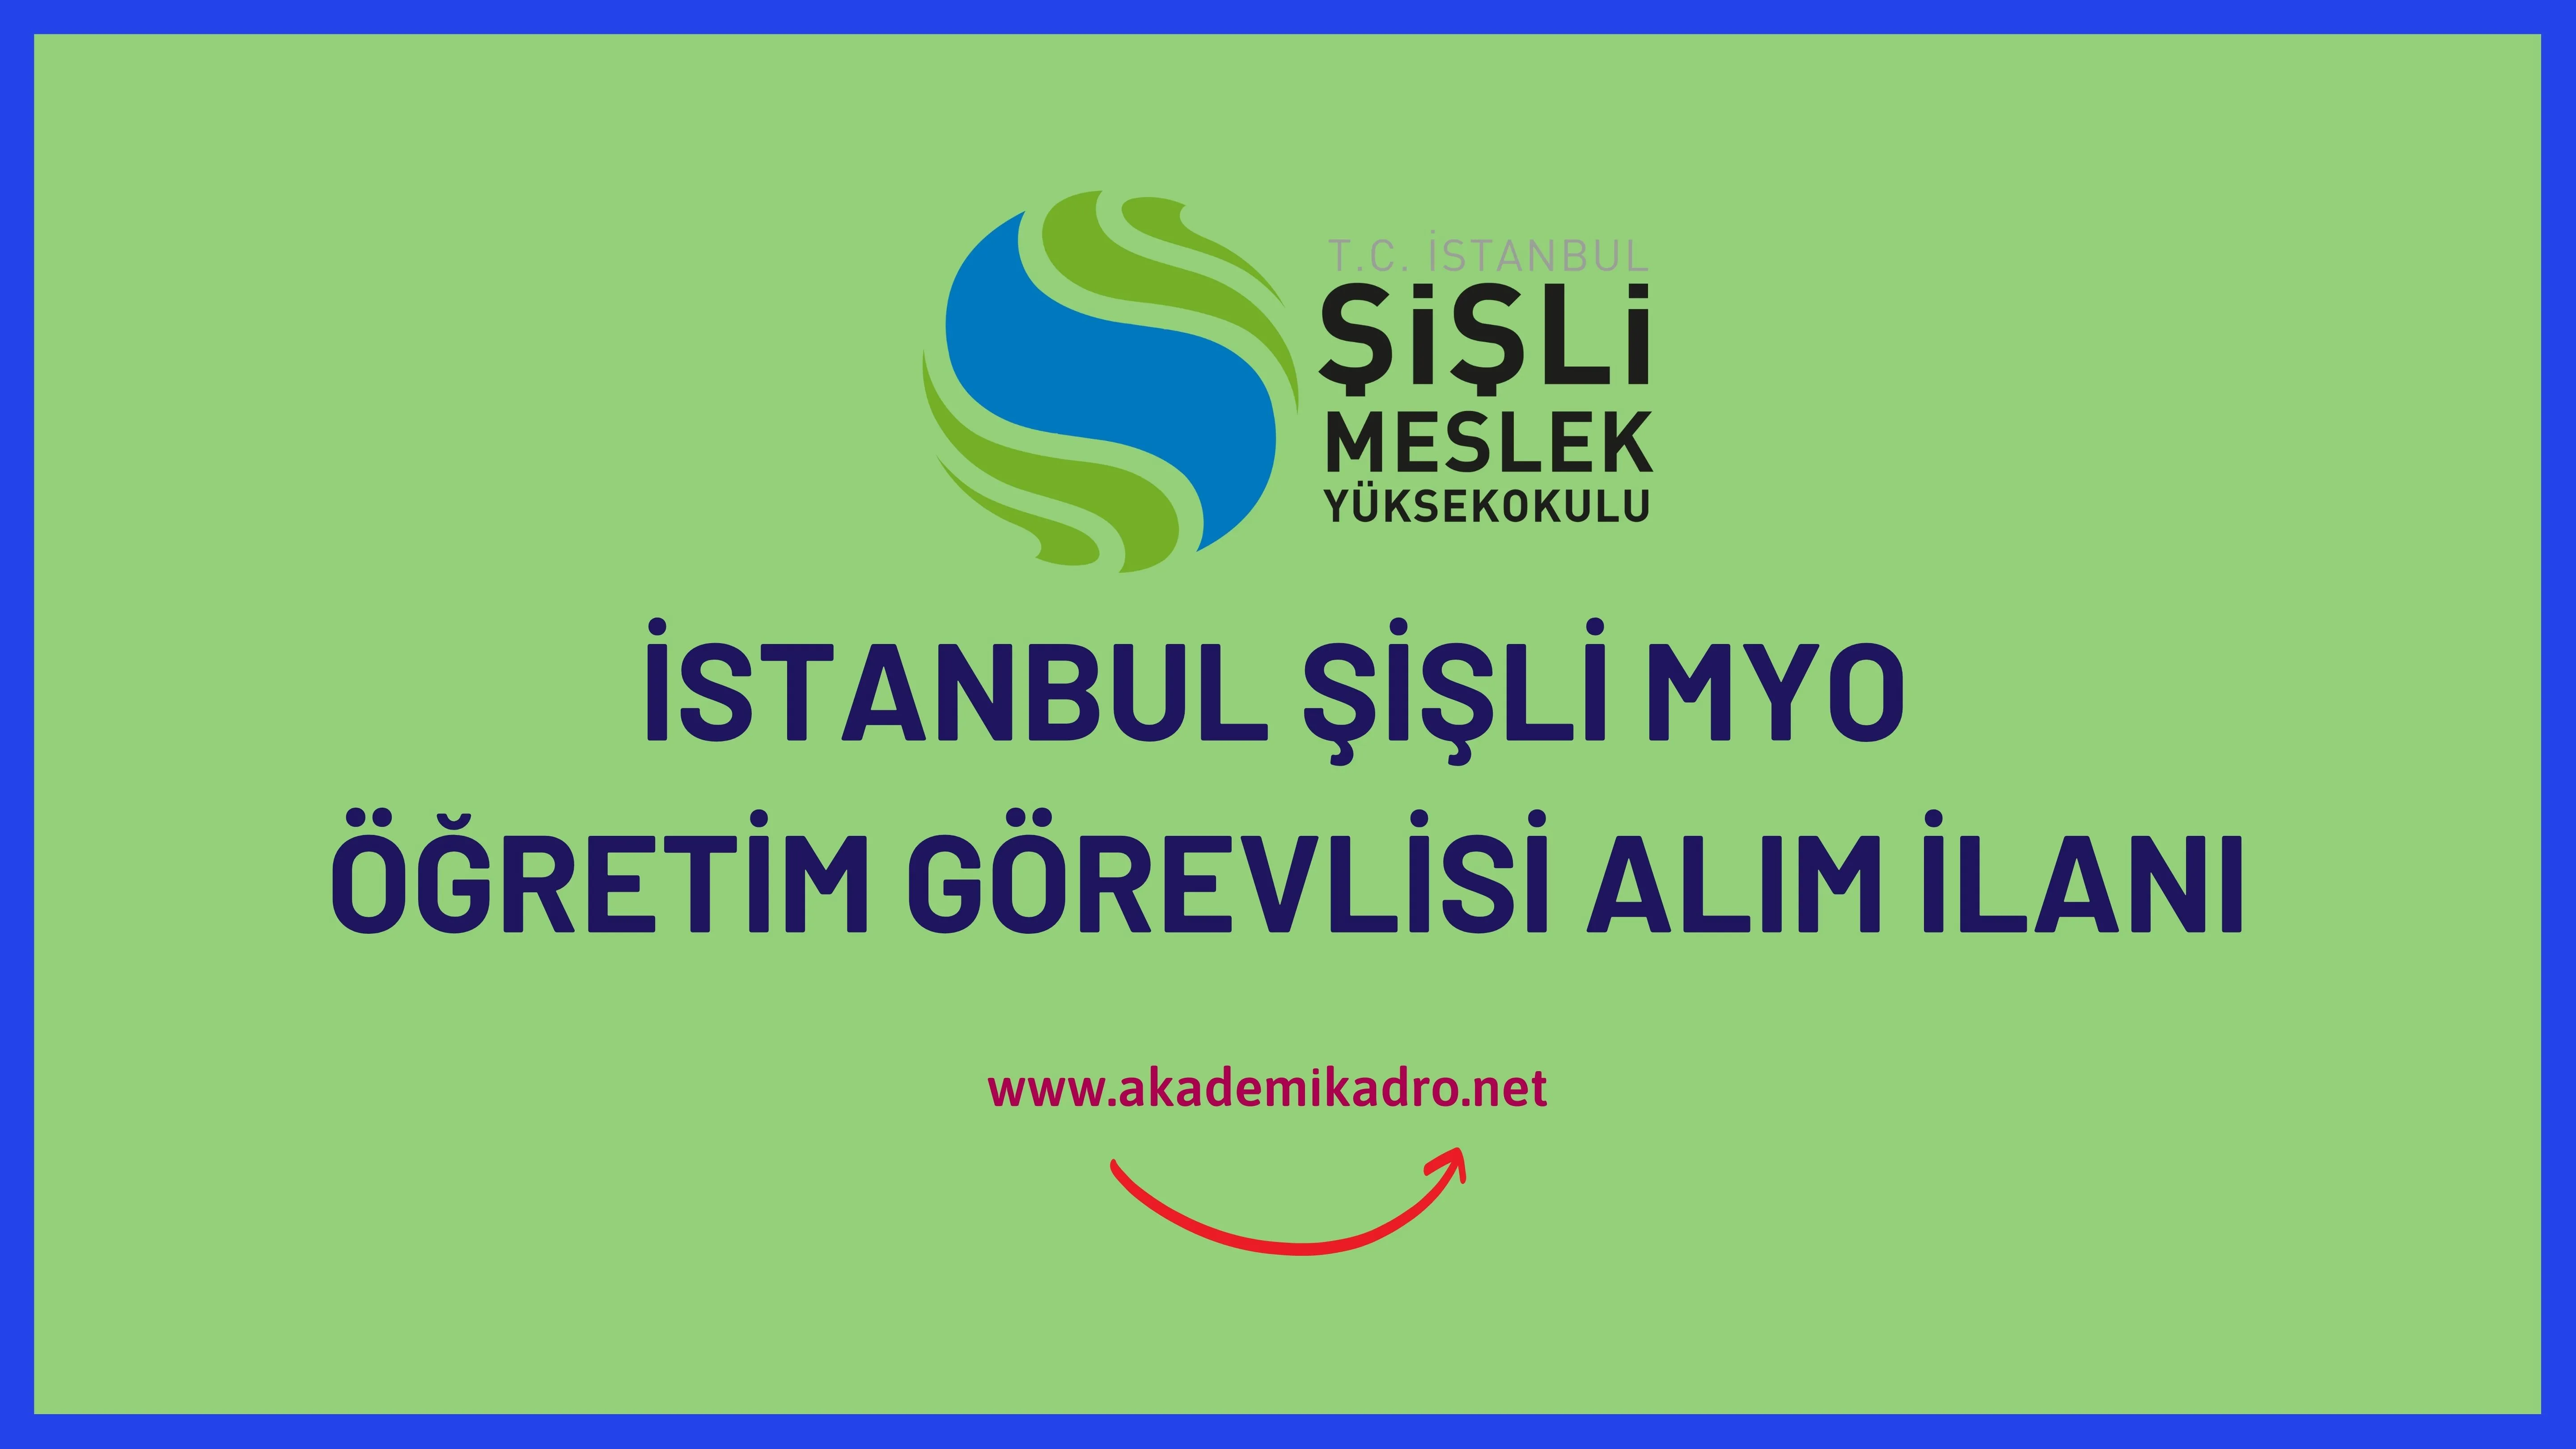 İstanbul Şişli Meslek Yüksekokulu 9 Öğretim görevlisi ve 4 Öğretim üyesi alacak.